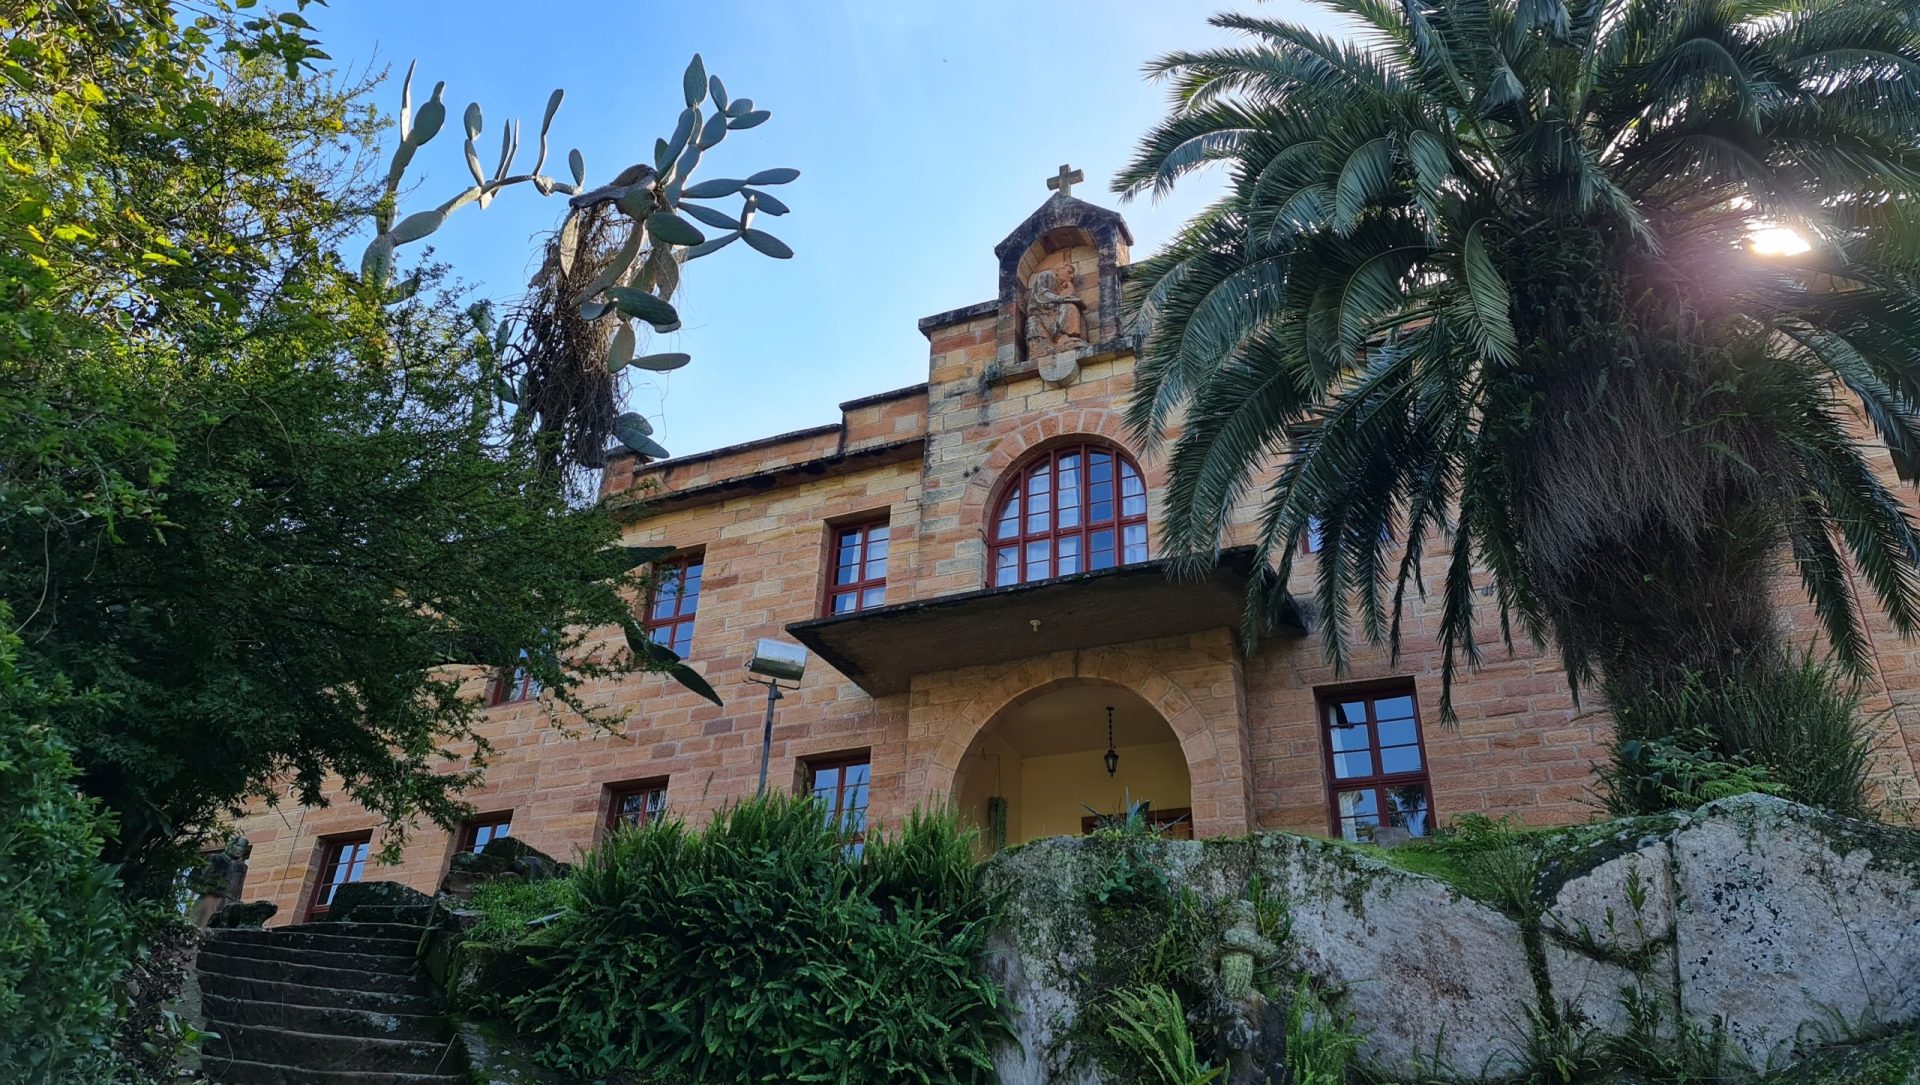 Convento São Boaventura se torna refúgio de beleza arquitetônica em Imigrante